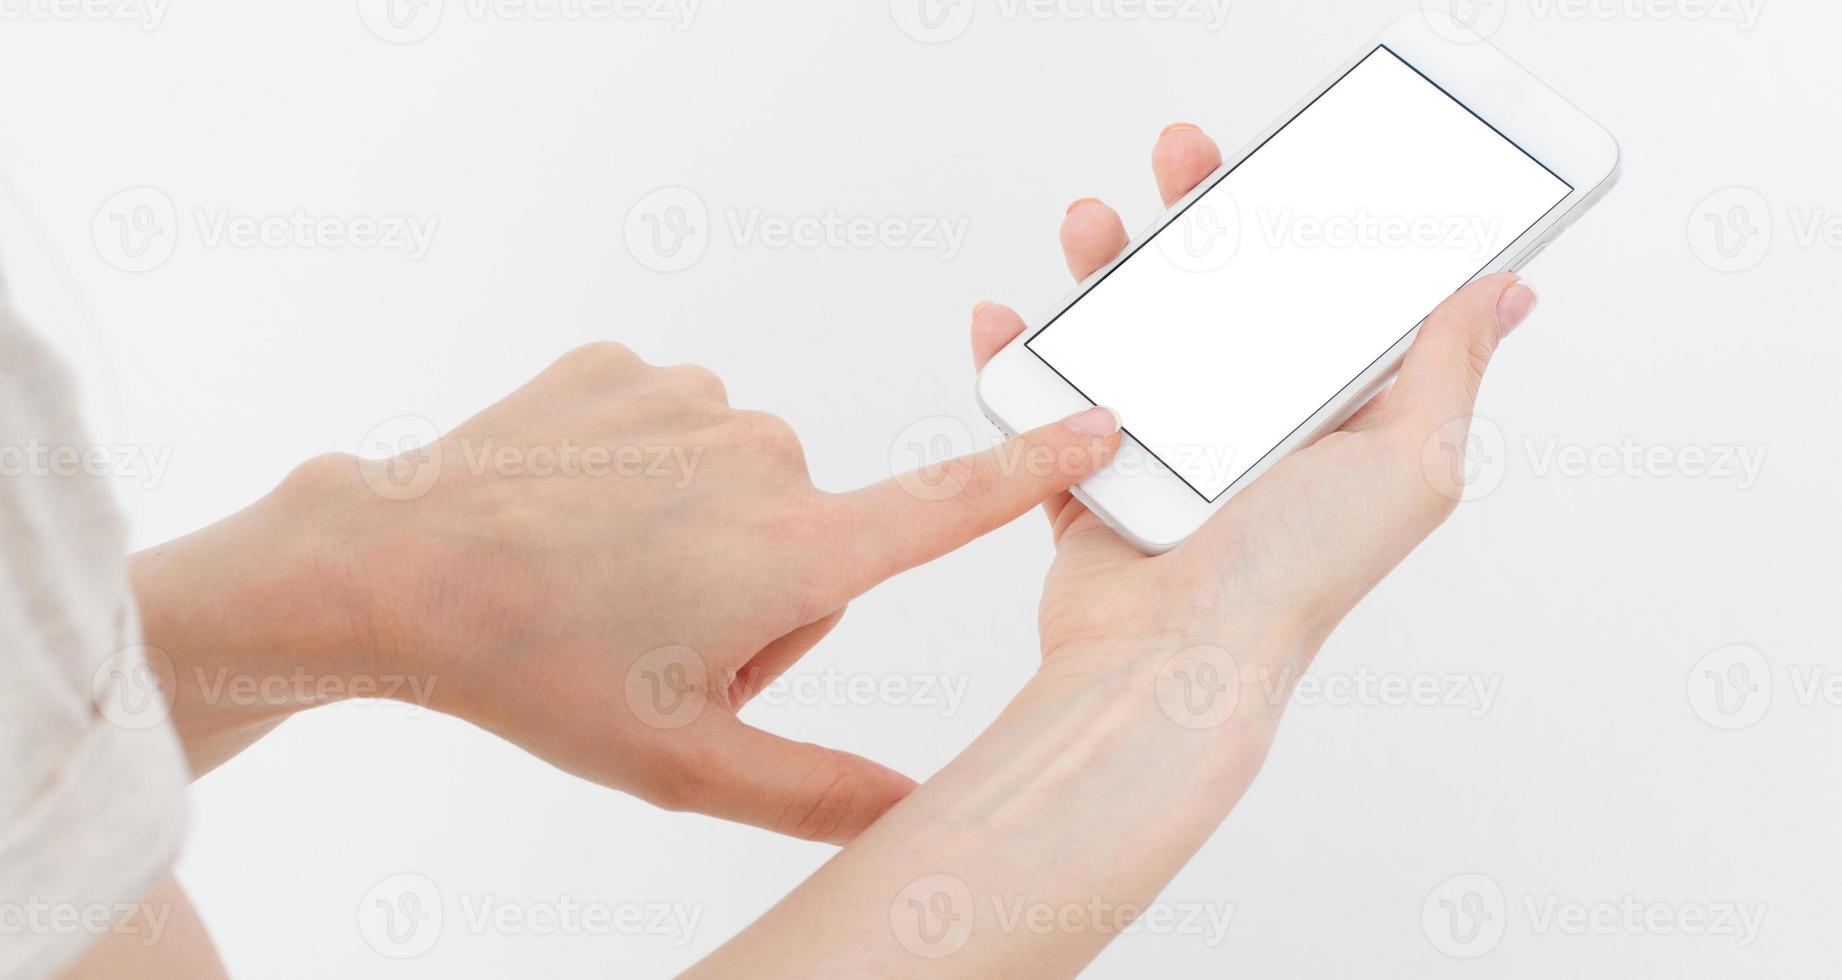 Asimiento de la mano femenina teléfono móvil aislado en blanco, mujer sosteniendo el teléfono con pantalla vacía, pantalla en blanco, tocando foto